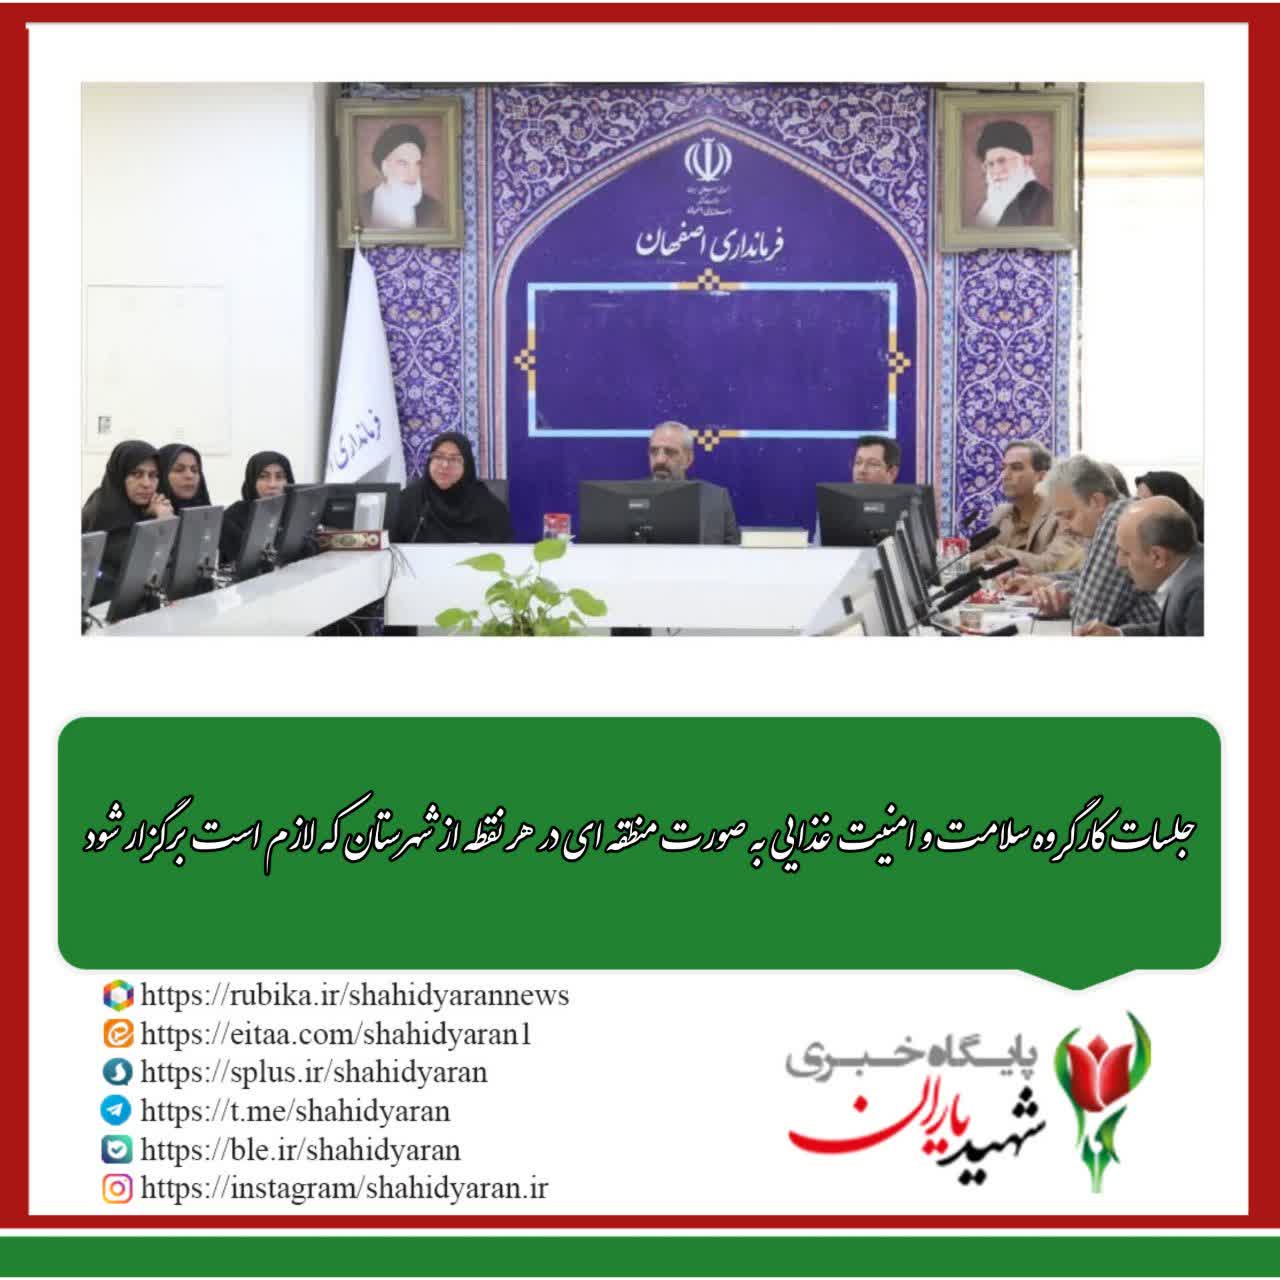 فرماندار اصفهان: جلسات کارگروه سلامت و امنیت غذایی به صورت منطقه ای در هر نقطه از شهرستان که لازم است برگزار شود.